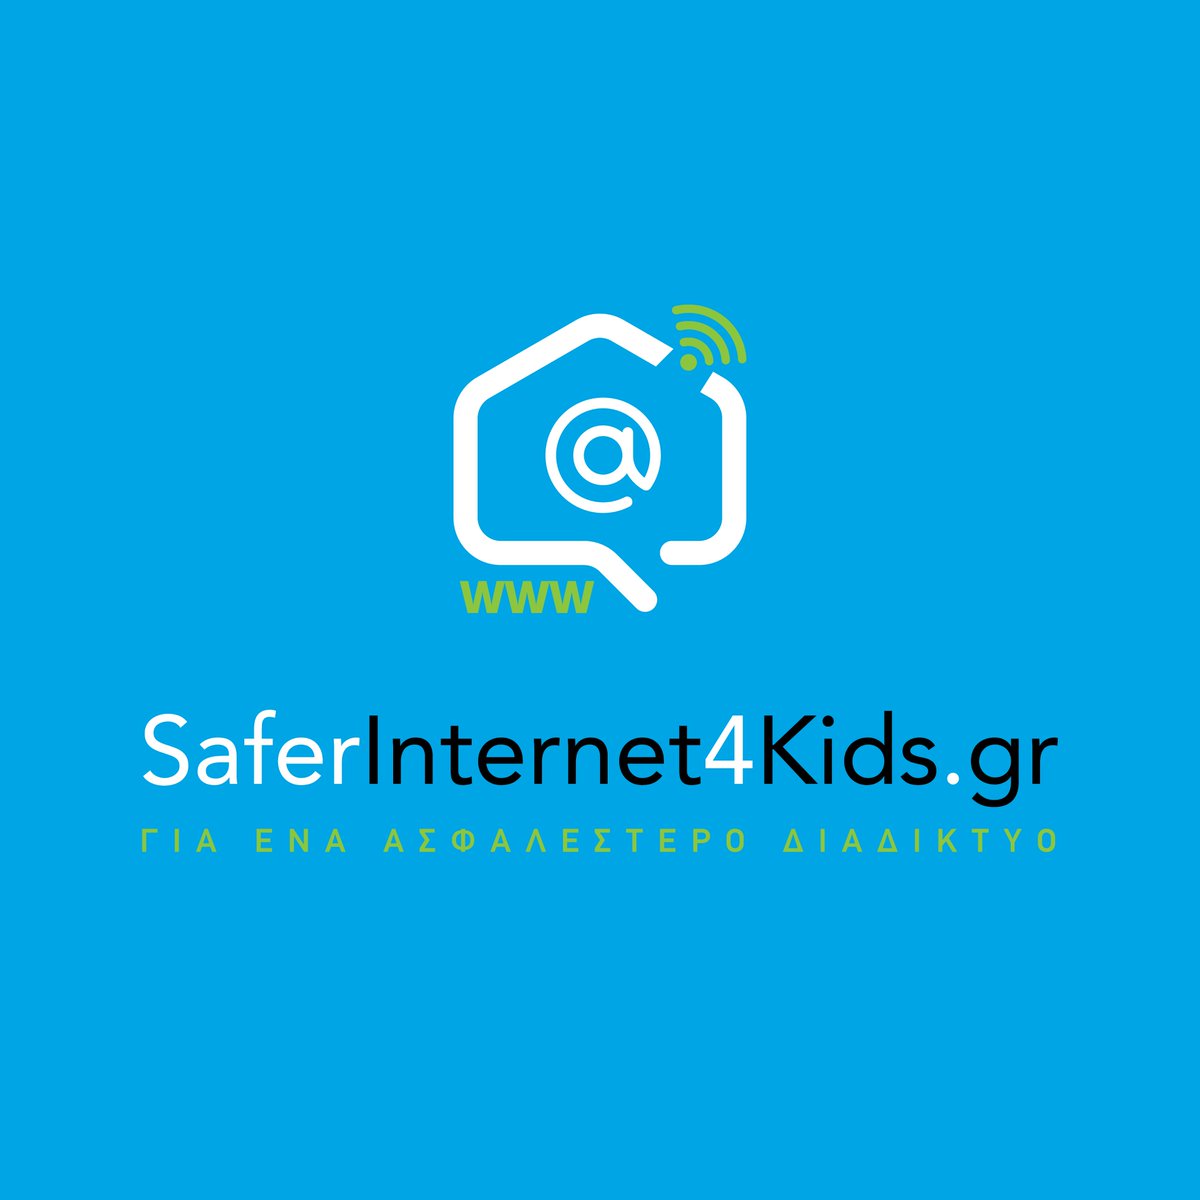 Πανελλήνιος Μαθητικός Διαγωνισμός με τίτλο « Όλοι μαζί για ένα καλύτερο διαδίκτυο» του Ελληνικού Κέντρου Ασφαλούς Διαδικτύου του Ιδρύματος Τεχνολογίας και Έρευνας (SaferInternet4Kids) για το σχολικό έτος 2020-2021